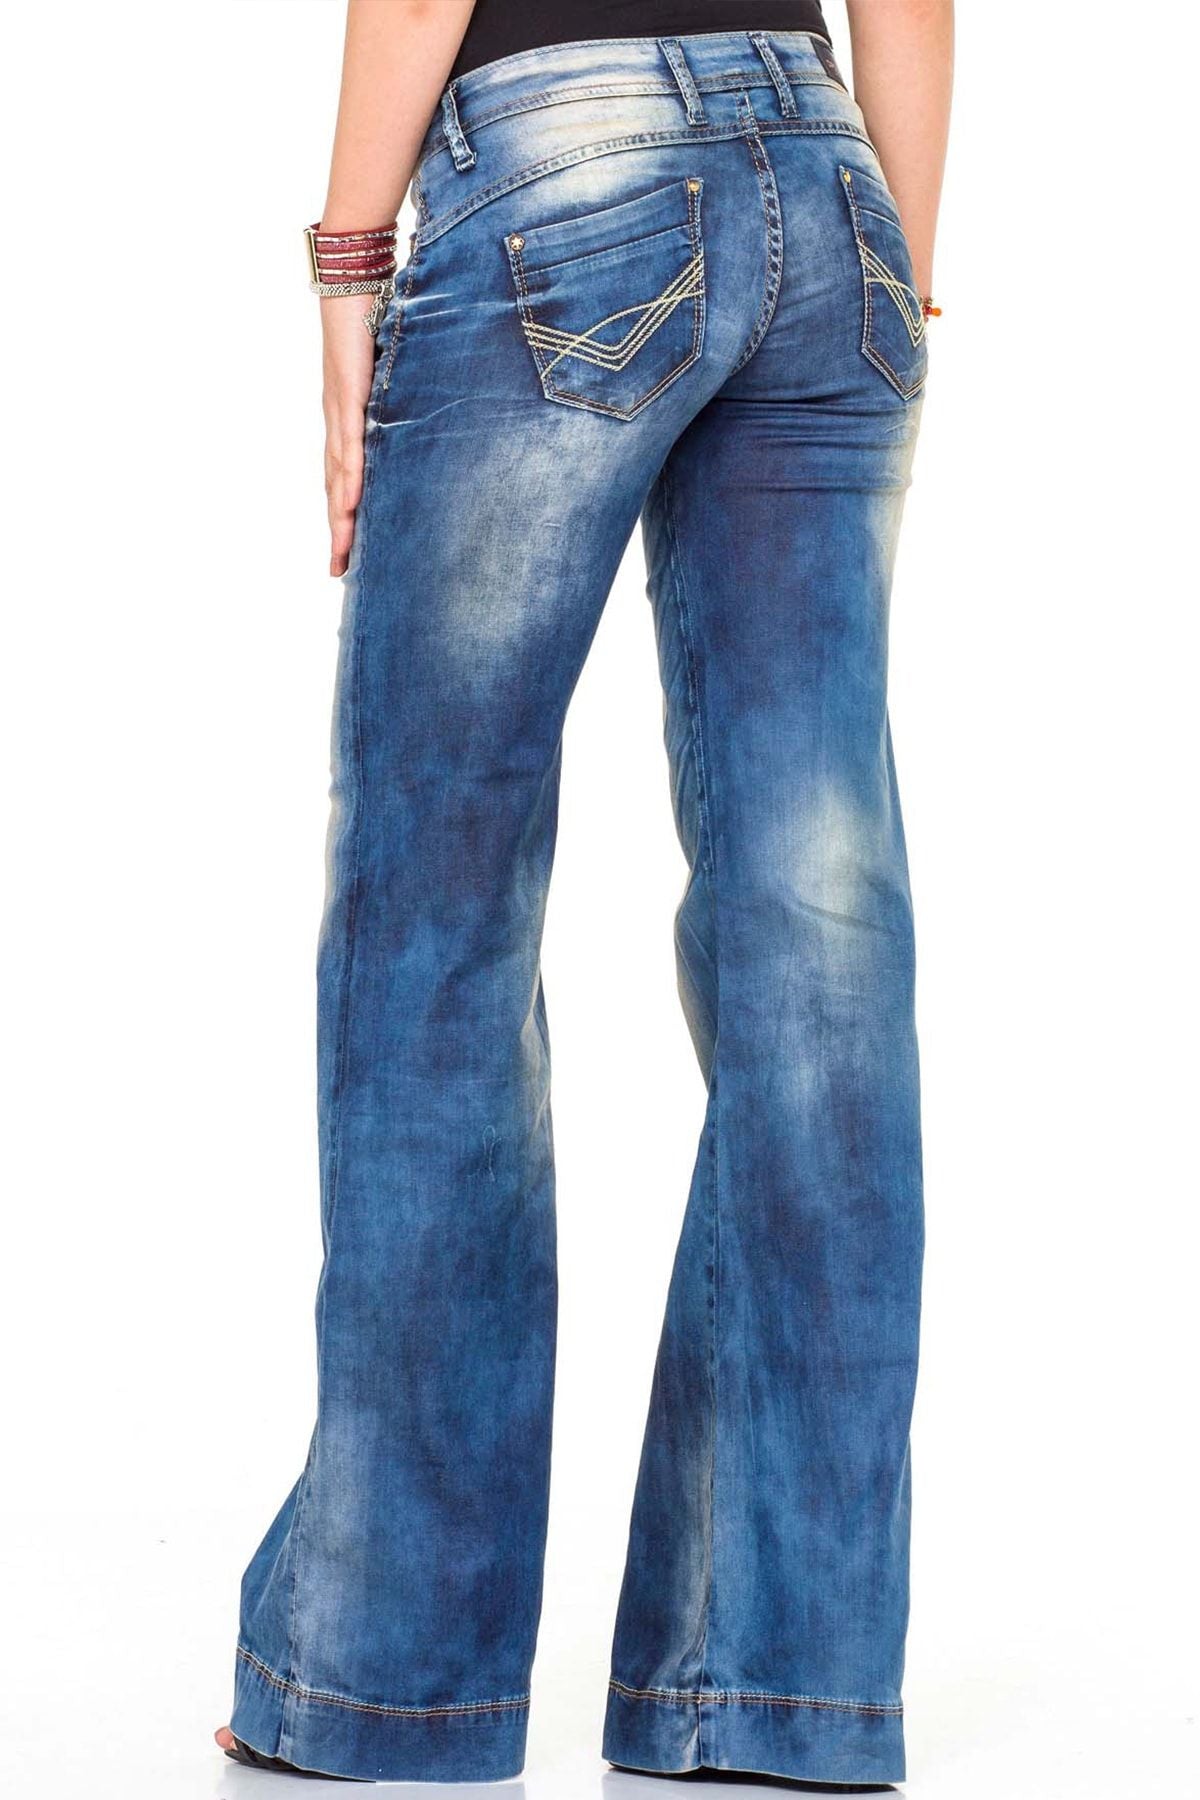 CBW-0424 Jeans standard pour femmes